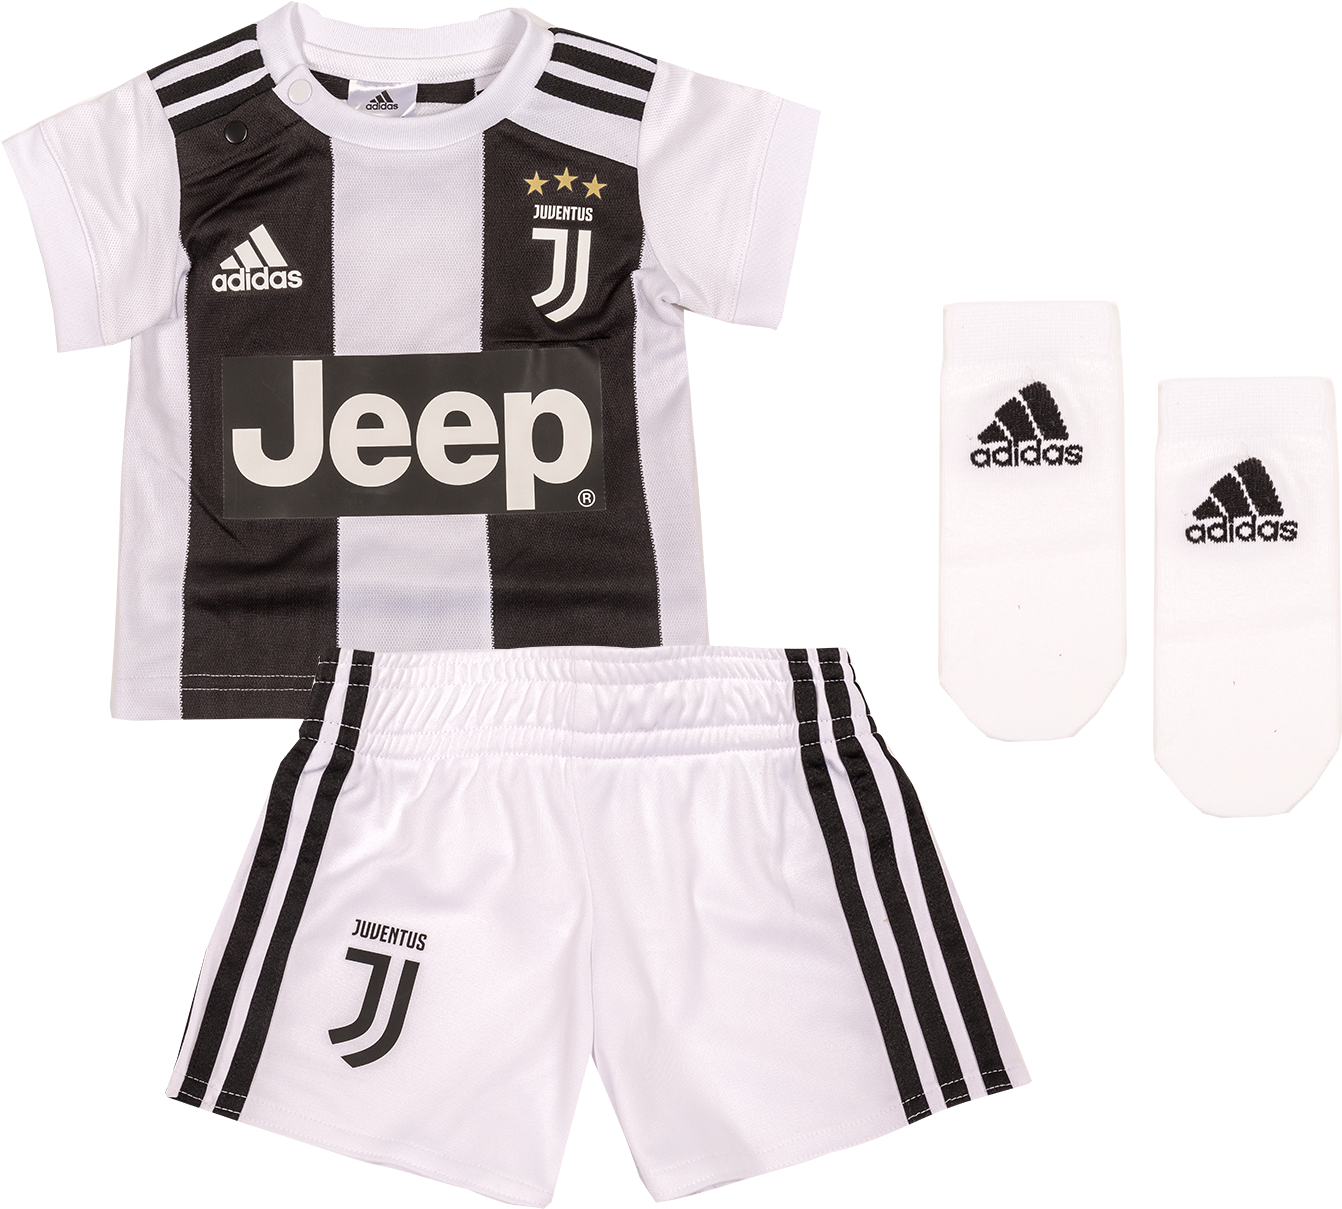 Juventus Home Mini Kit 2018/19 - Juventus Kit 2018 19 Png (1600x1600), Png Download